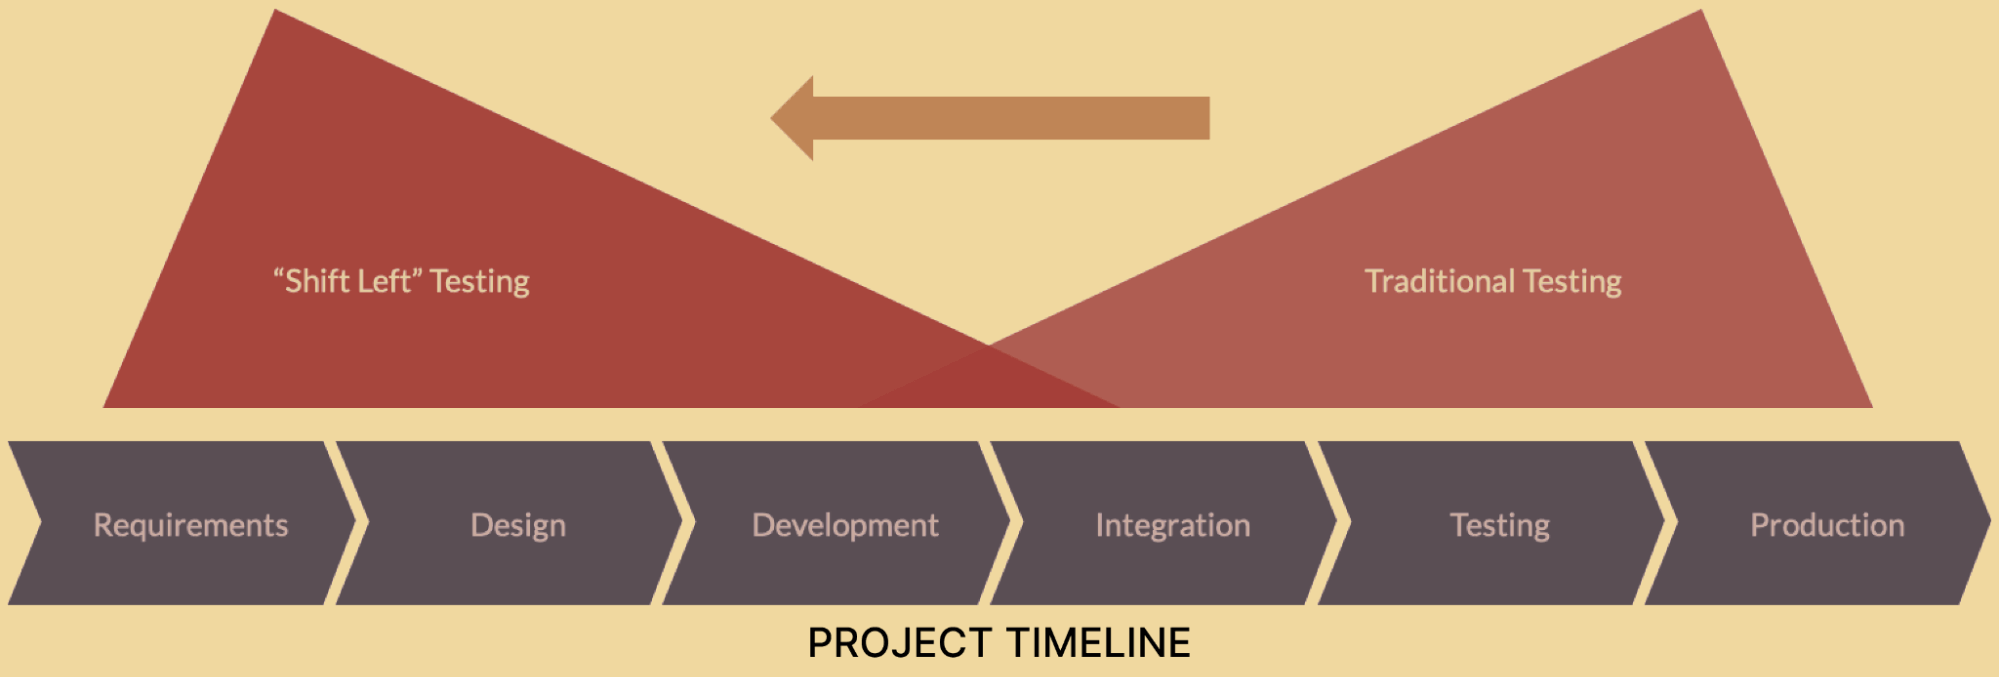 Shift Left Testing project timeline